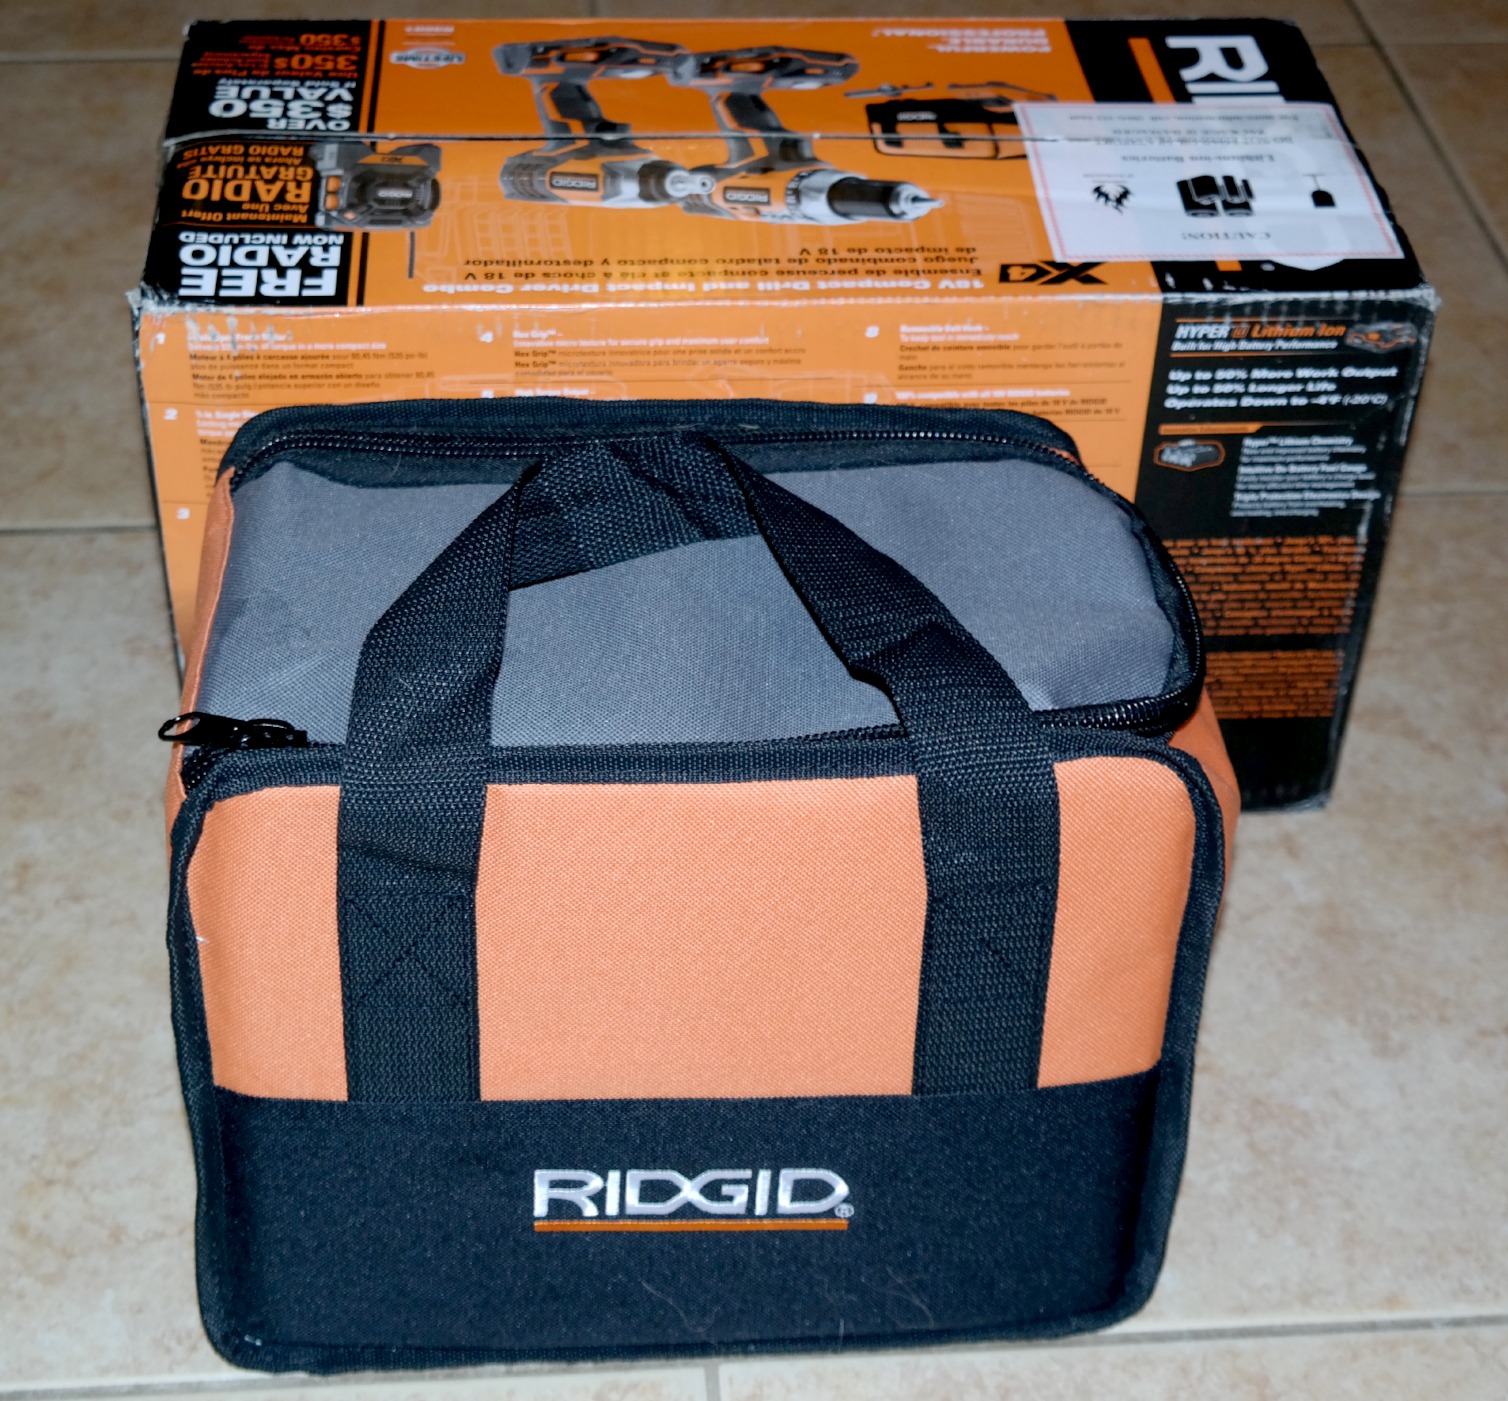 ridgid combo kit bag